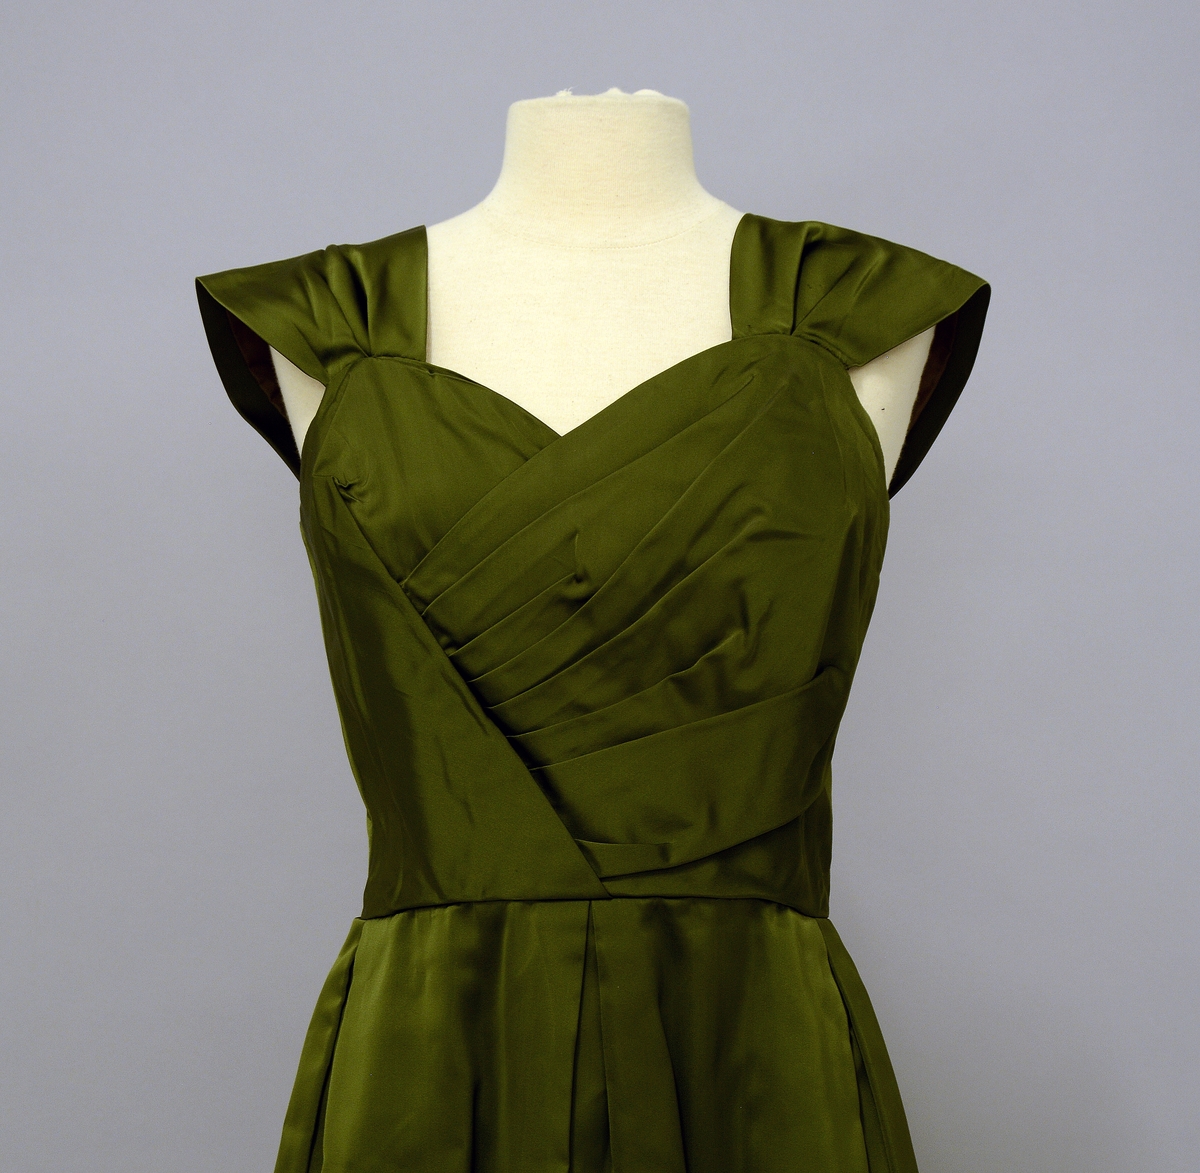 Selskapskjole med brede stropper på skulderene. Foran har kjolen flere legg på skrå som dekor. Kjolen kan lukkes med glidelås bak. Skjøret er lagt i brede folder foran og bak. Tøyet er av grønn silkesateng. Det tilhører en grønn stola til kjolen: TGM.2020:046.B